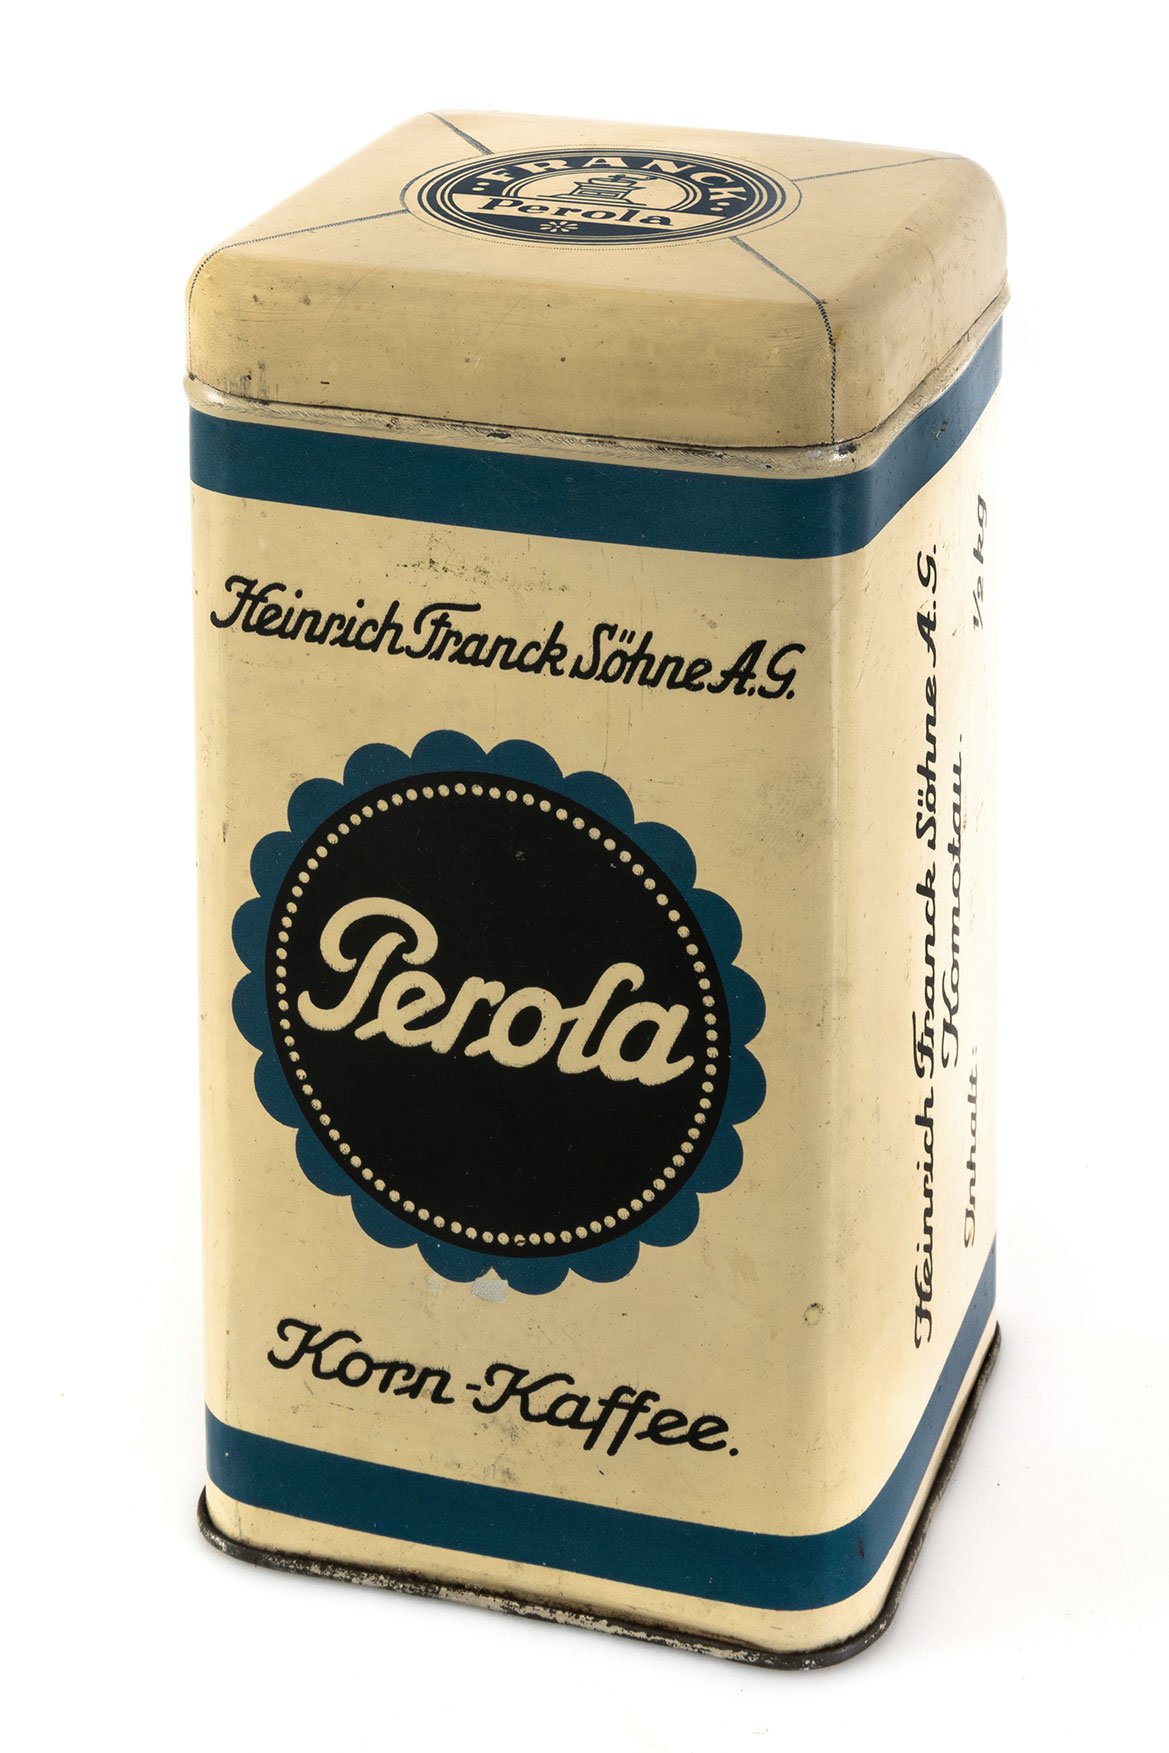 Perola, žitná káva v plechovce, produkt továrny v Chomutově, 2. čtvrtina 20. století